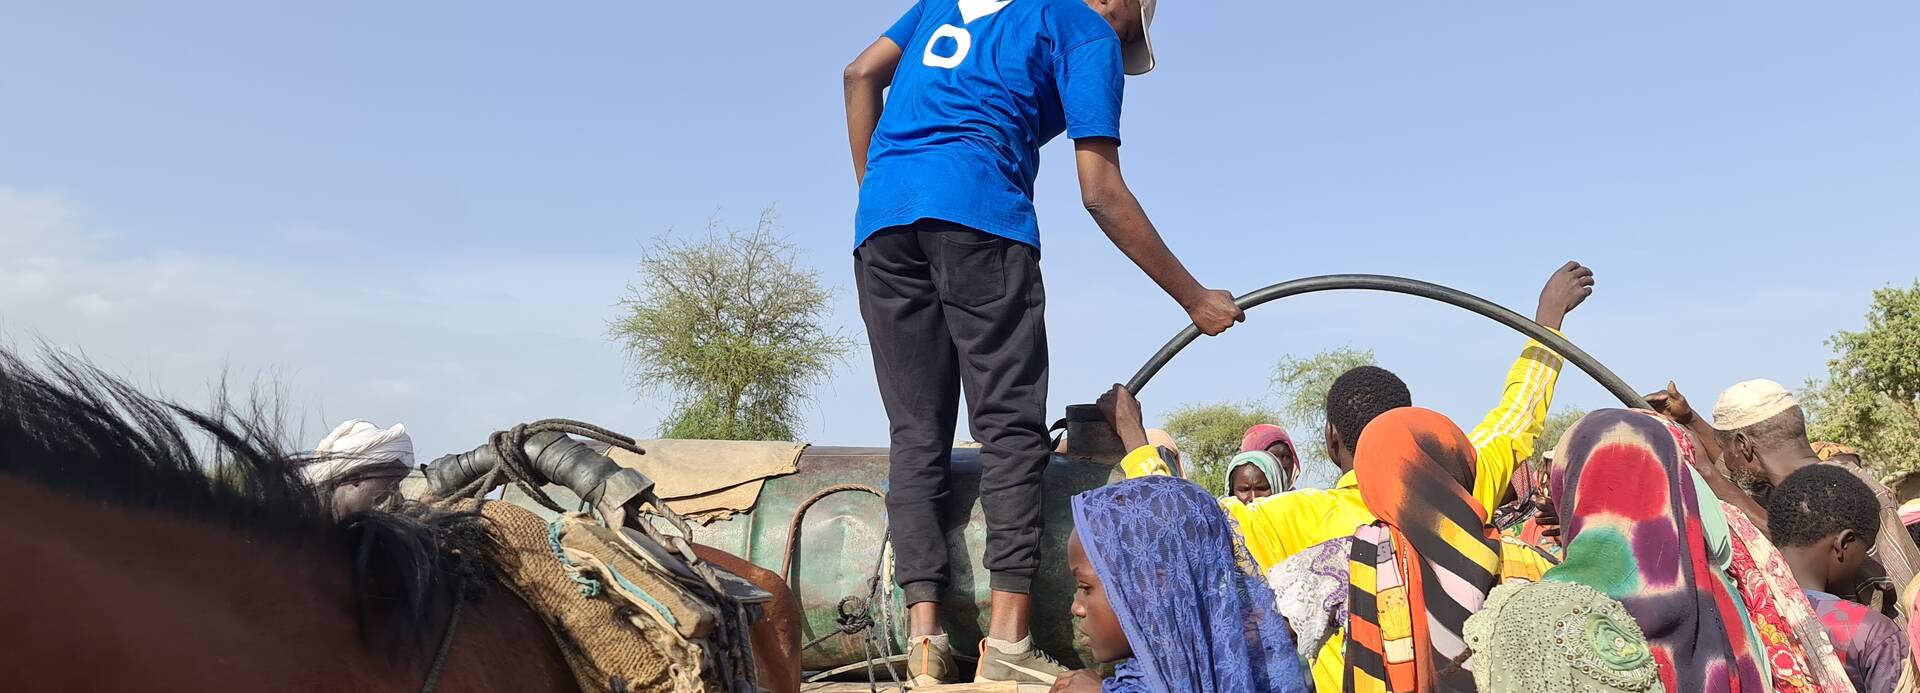 Ein Mitarbeiter von Aktion gegen den Hunger versorgt Geflüchtete aus dem Sudan mit Trinkwasser.